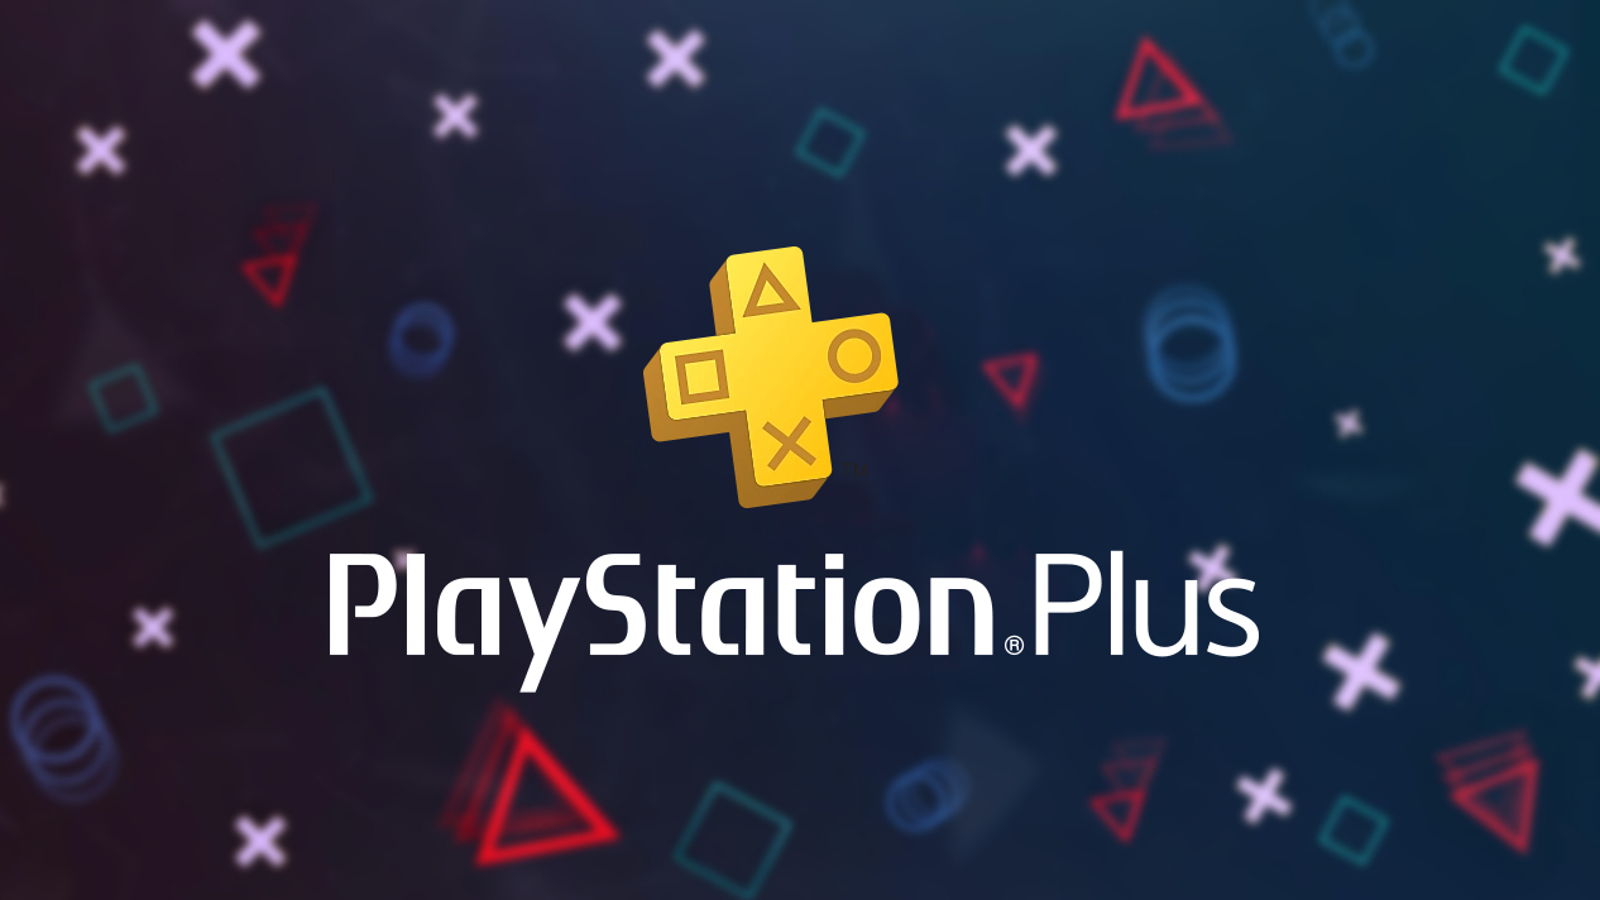 Joga modos online na PS5 e PS4 sem PS Plus no próximo fim de semana